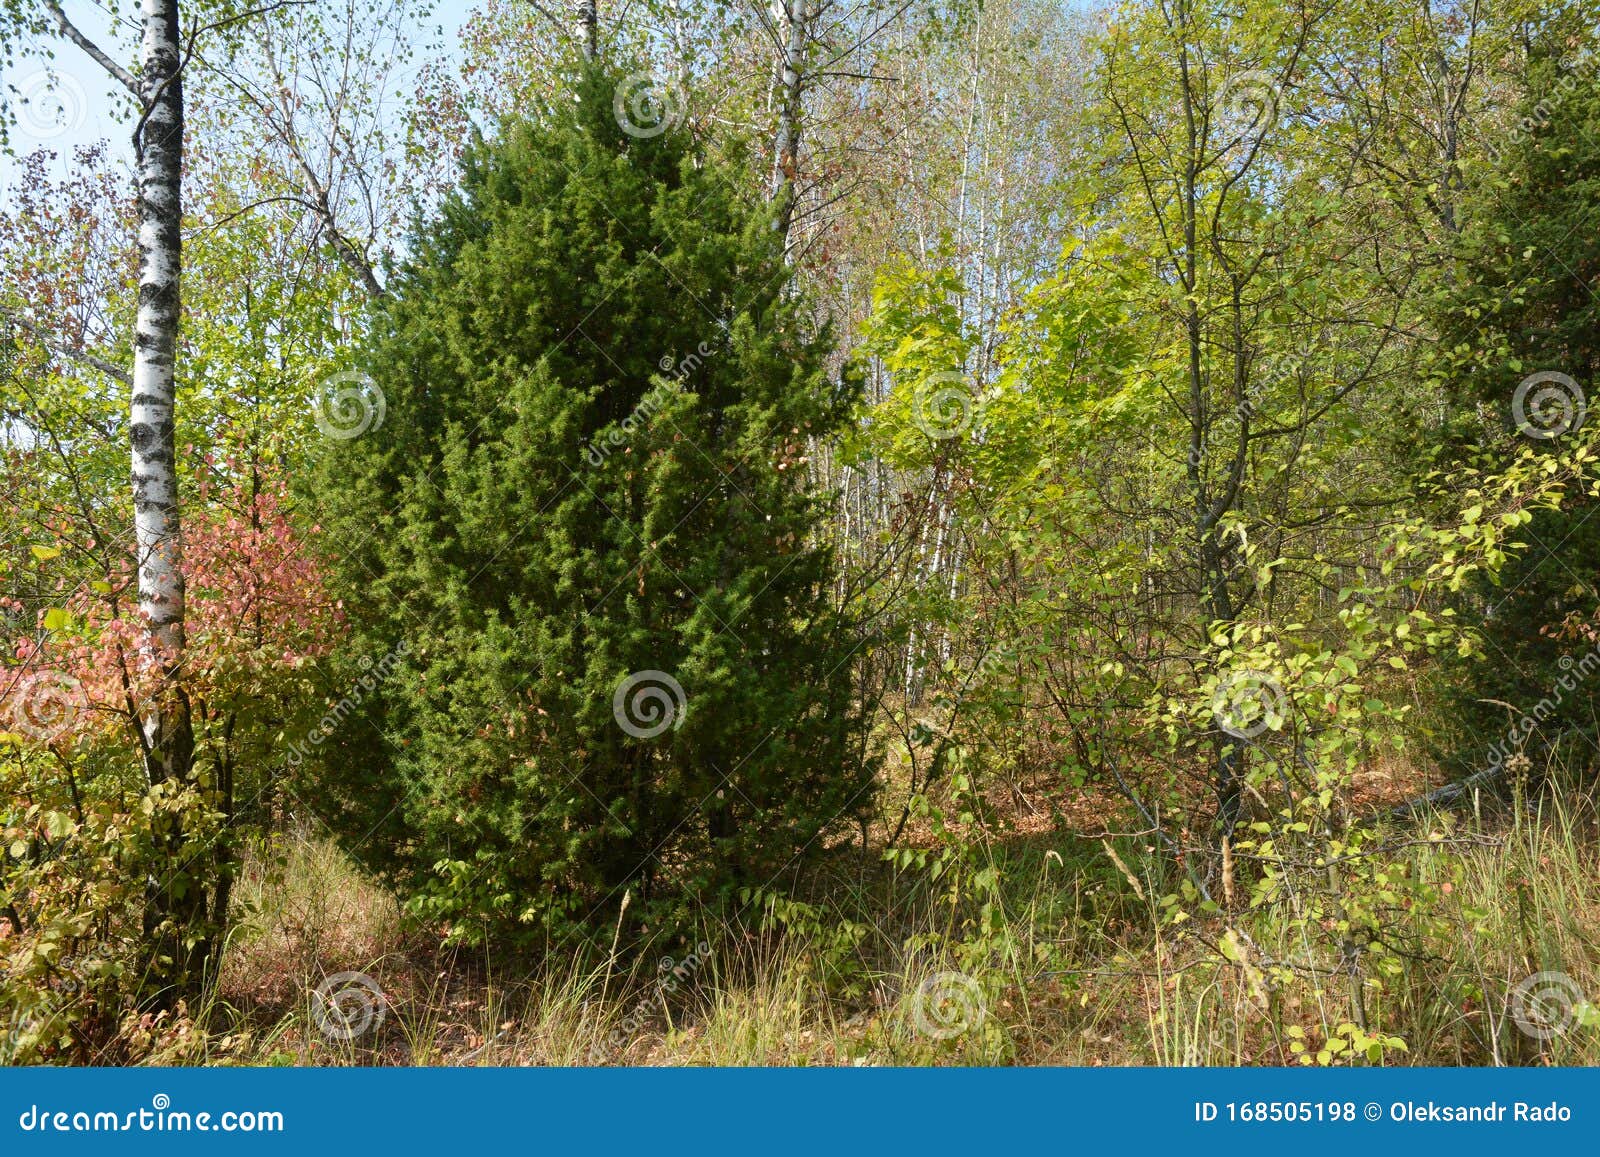 juniperus communis, the common juniper, is a species of conifer in the genus juniperus, in the family cupressaceae. juniper tree